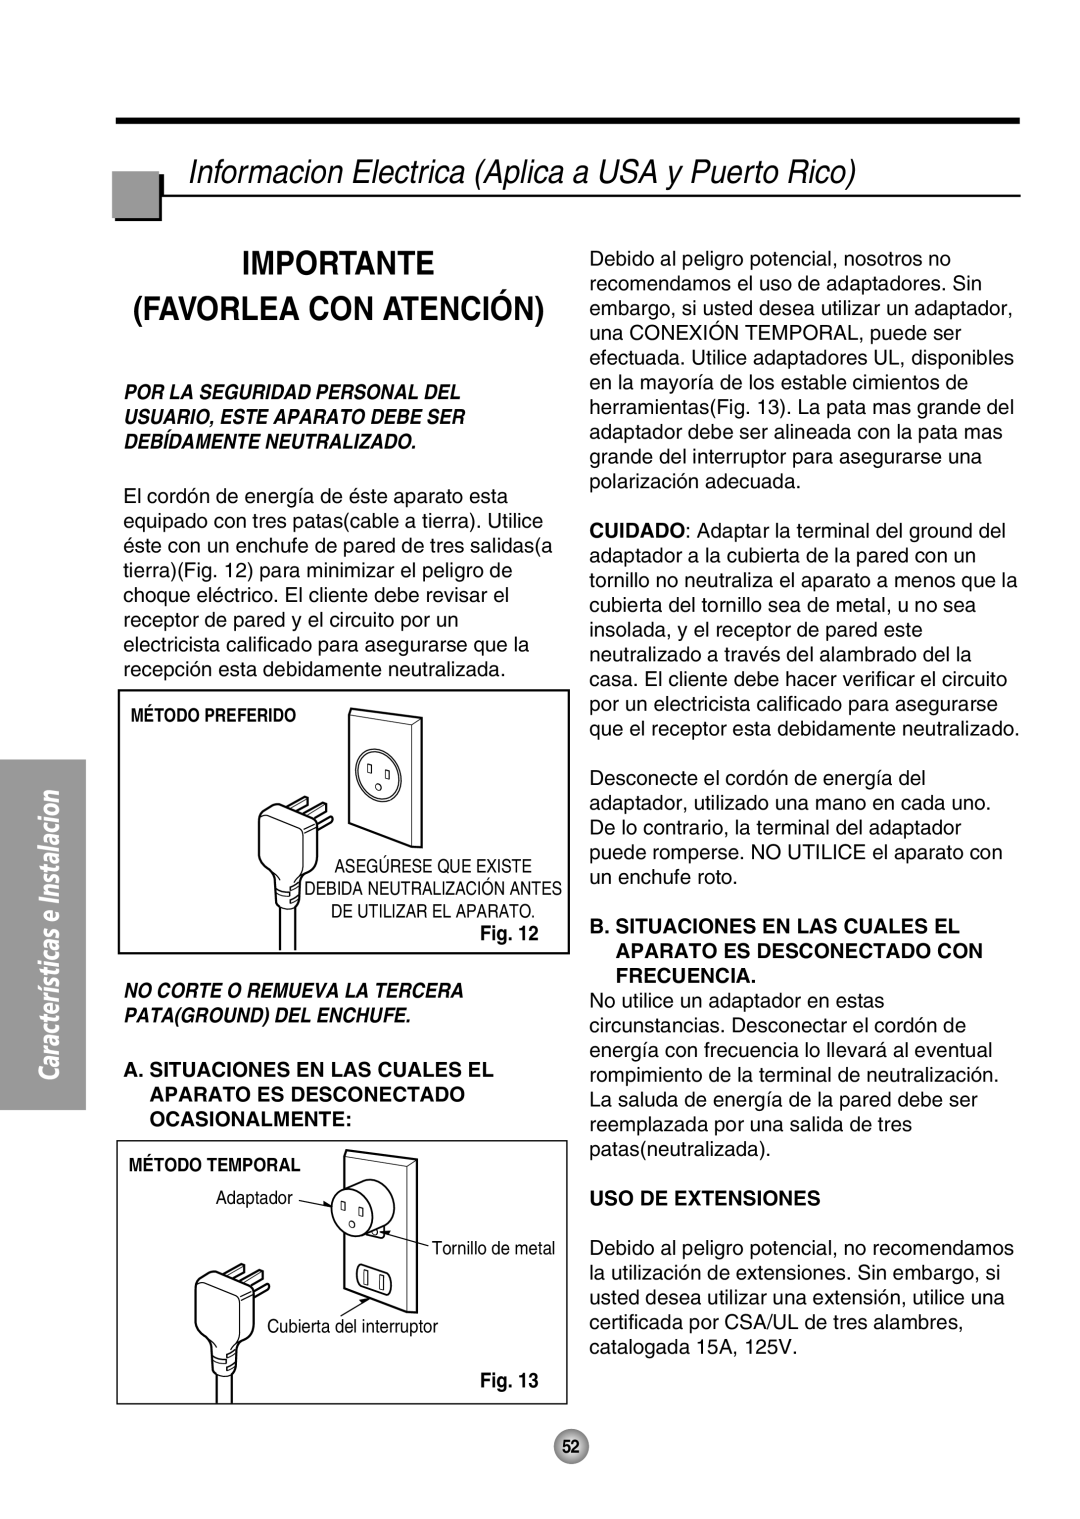 Panasonic CW-XC64HU Informacion Electrica Aplica a USA y Puerto Rico, Importante Favorlea Con Atención, Uso De Extensiones 